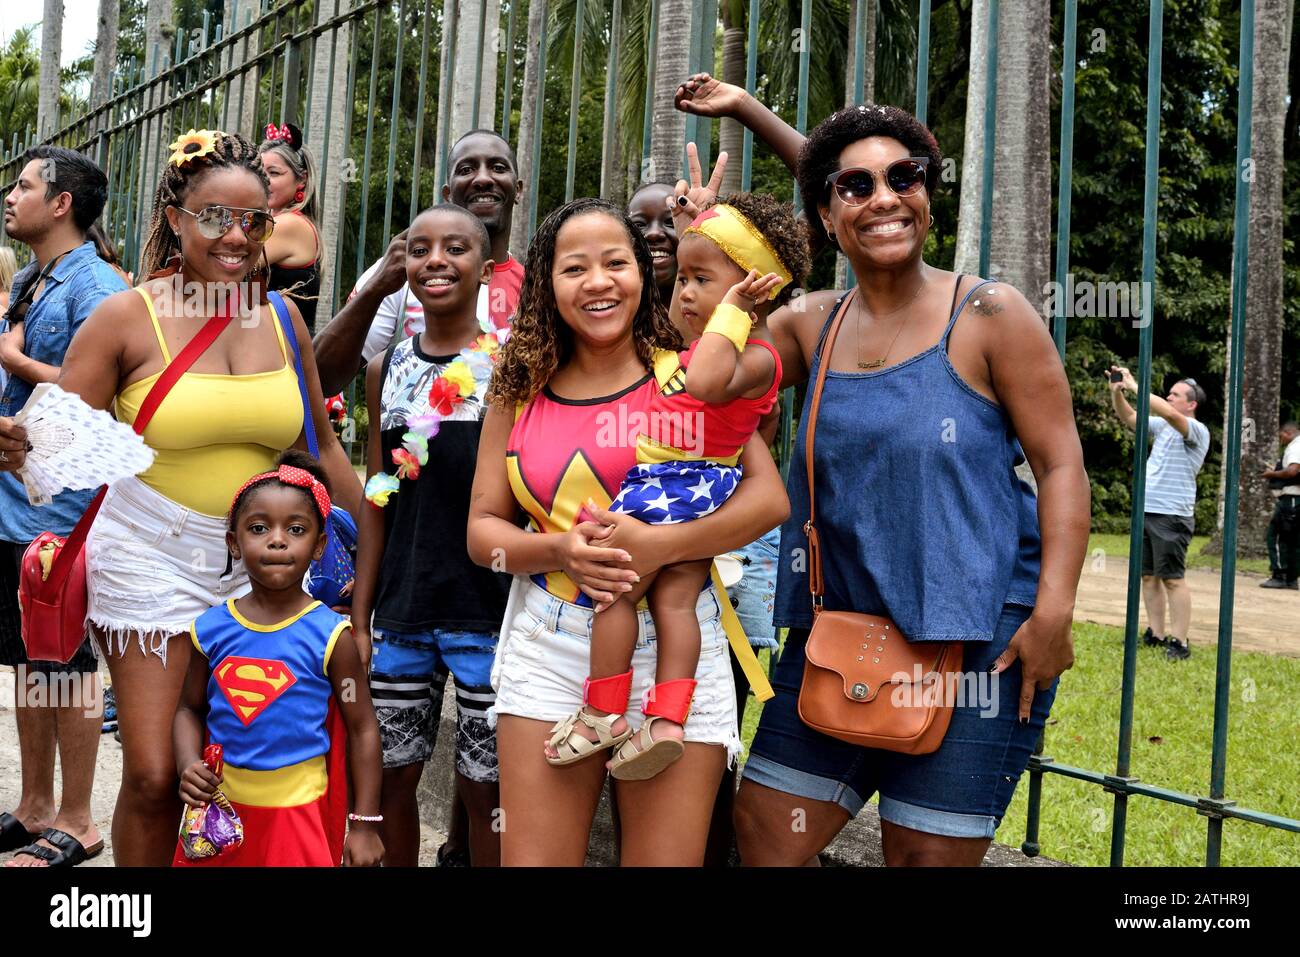 Street Carnival, Sud America, Brasile - 17 febbraio 2019: Una famiglia brasiliana che si diverte così tanto durante una festa di Carnevale tenutasi a Rio de Janeiro. Foto Stock